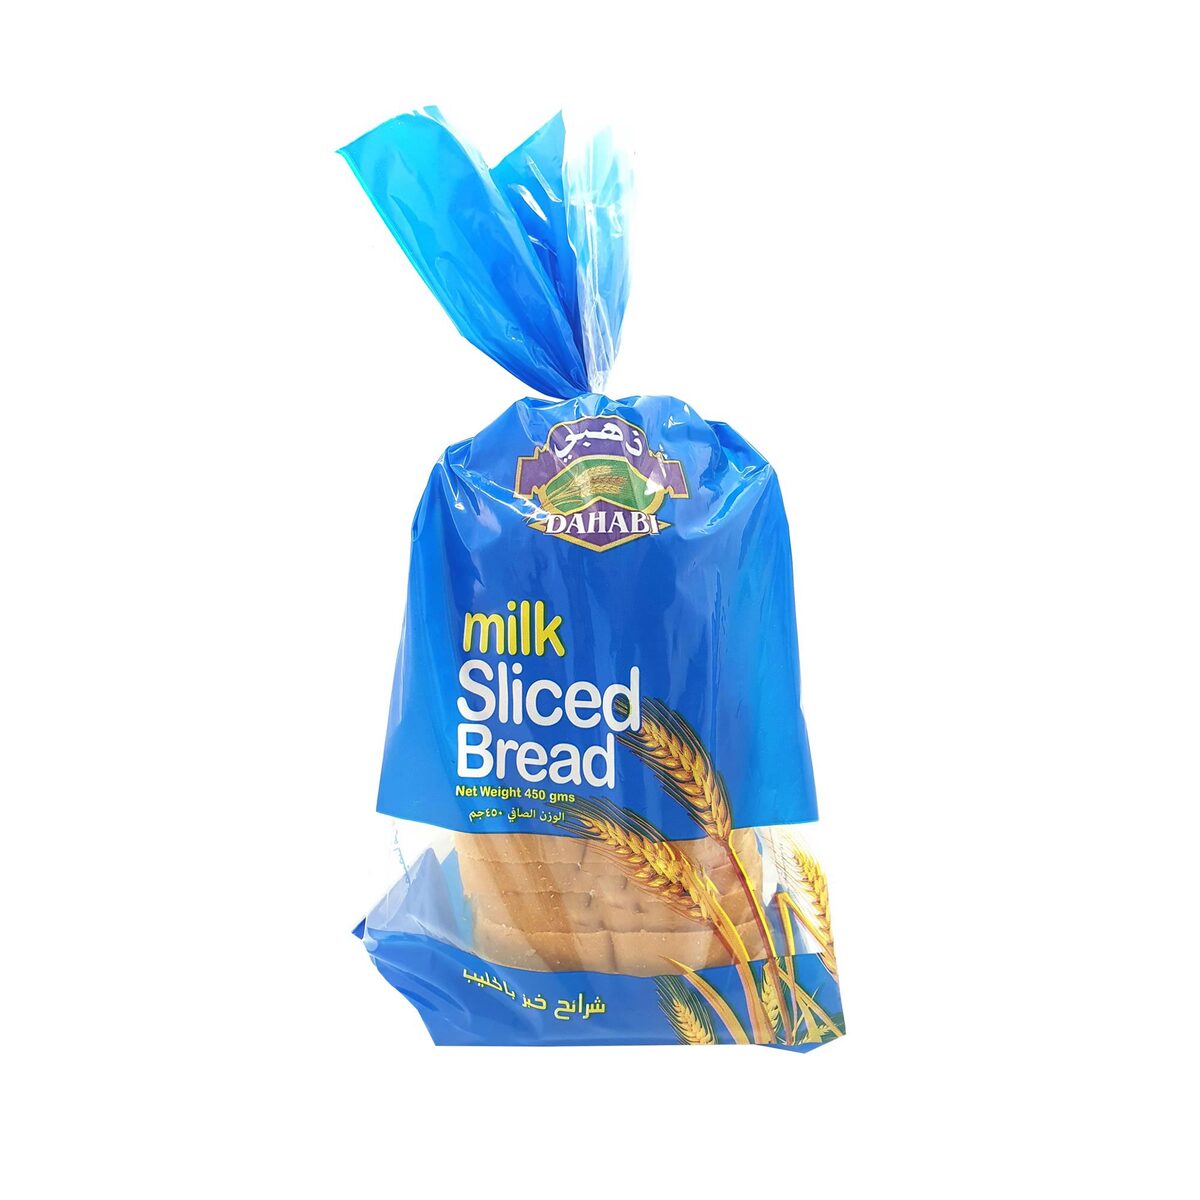 Dahabi Milk Sliced Bread Medium 450 g